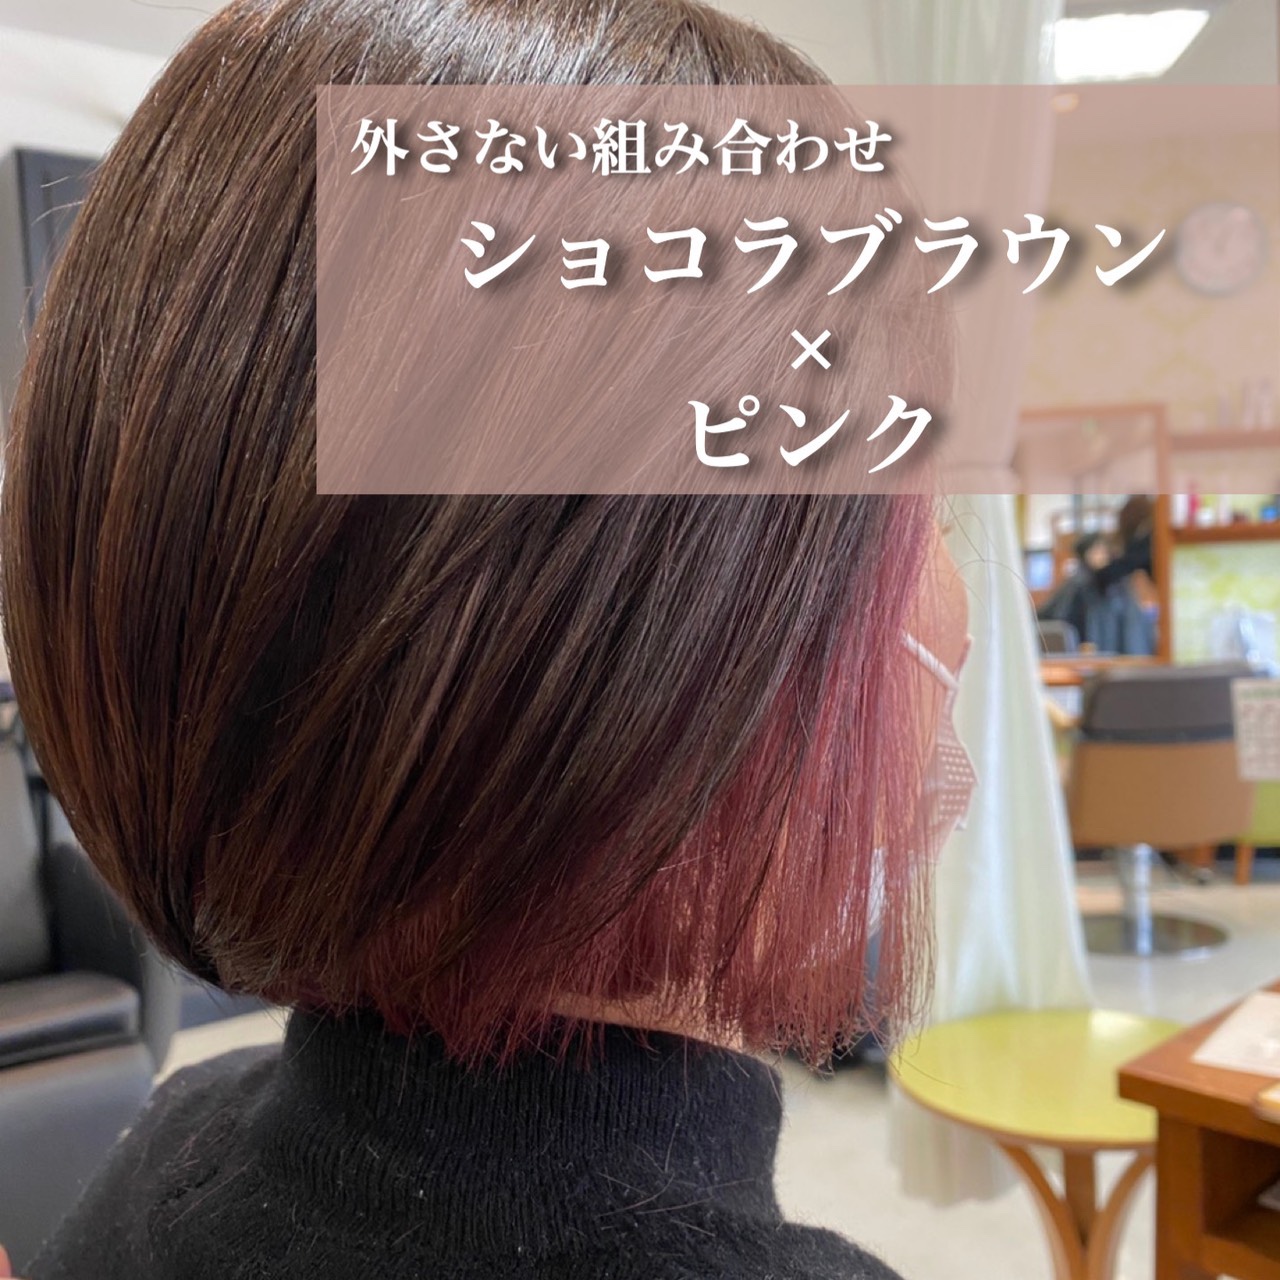 ピンクのインナーカラーとショコラブラウン 成田 富里の美容室 エムズハウス